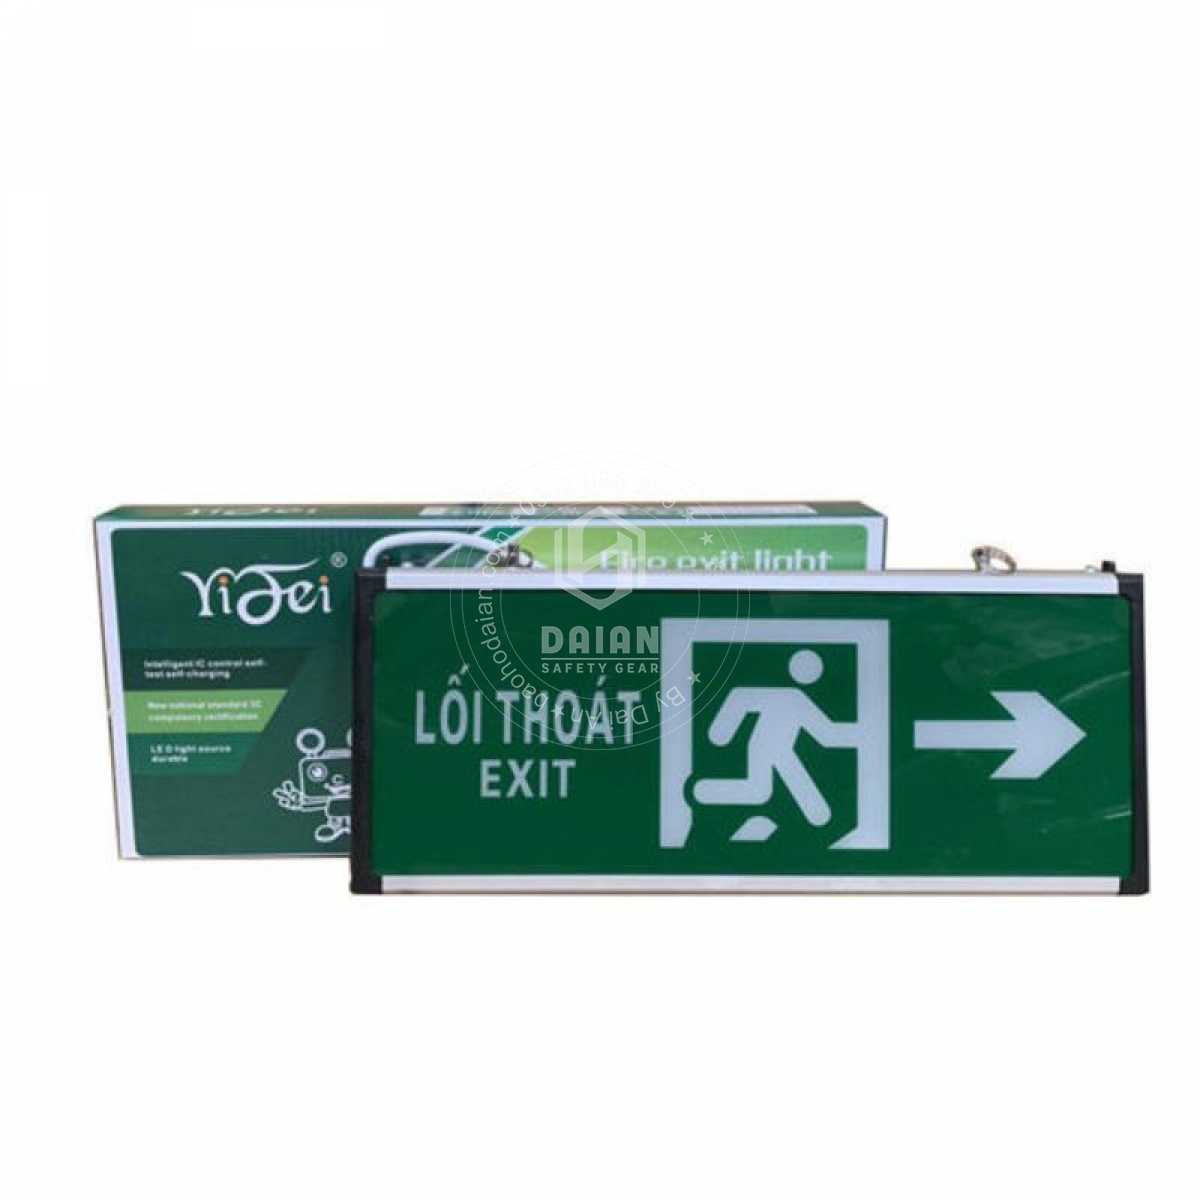 den-exit-thoat-hiem-yf1018-chi-phai